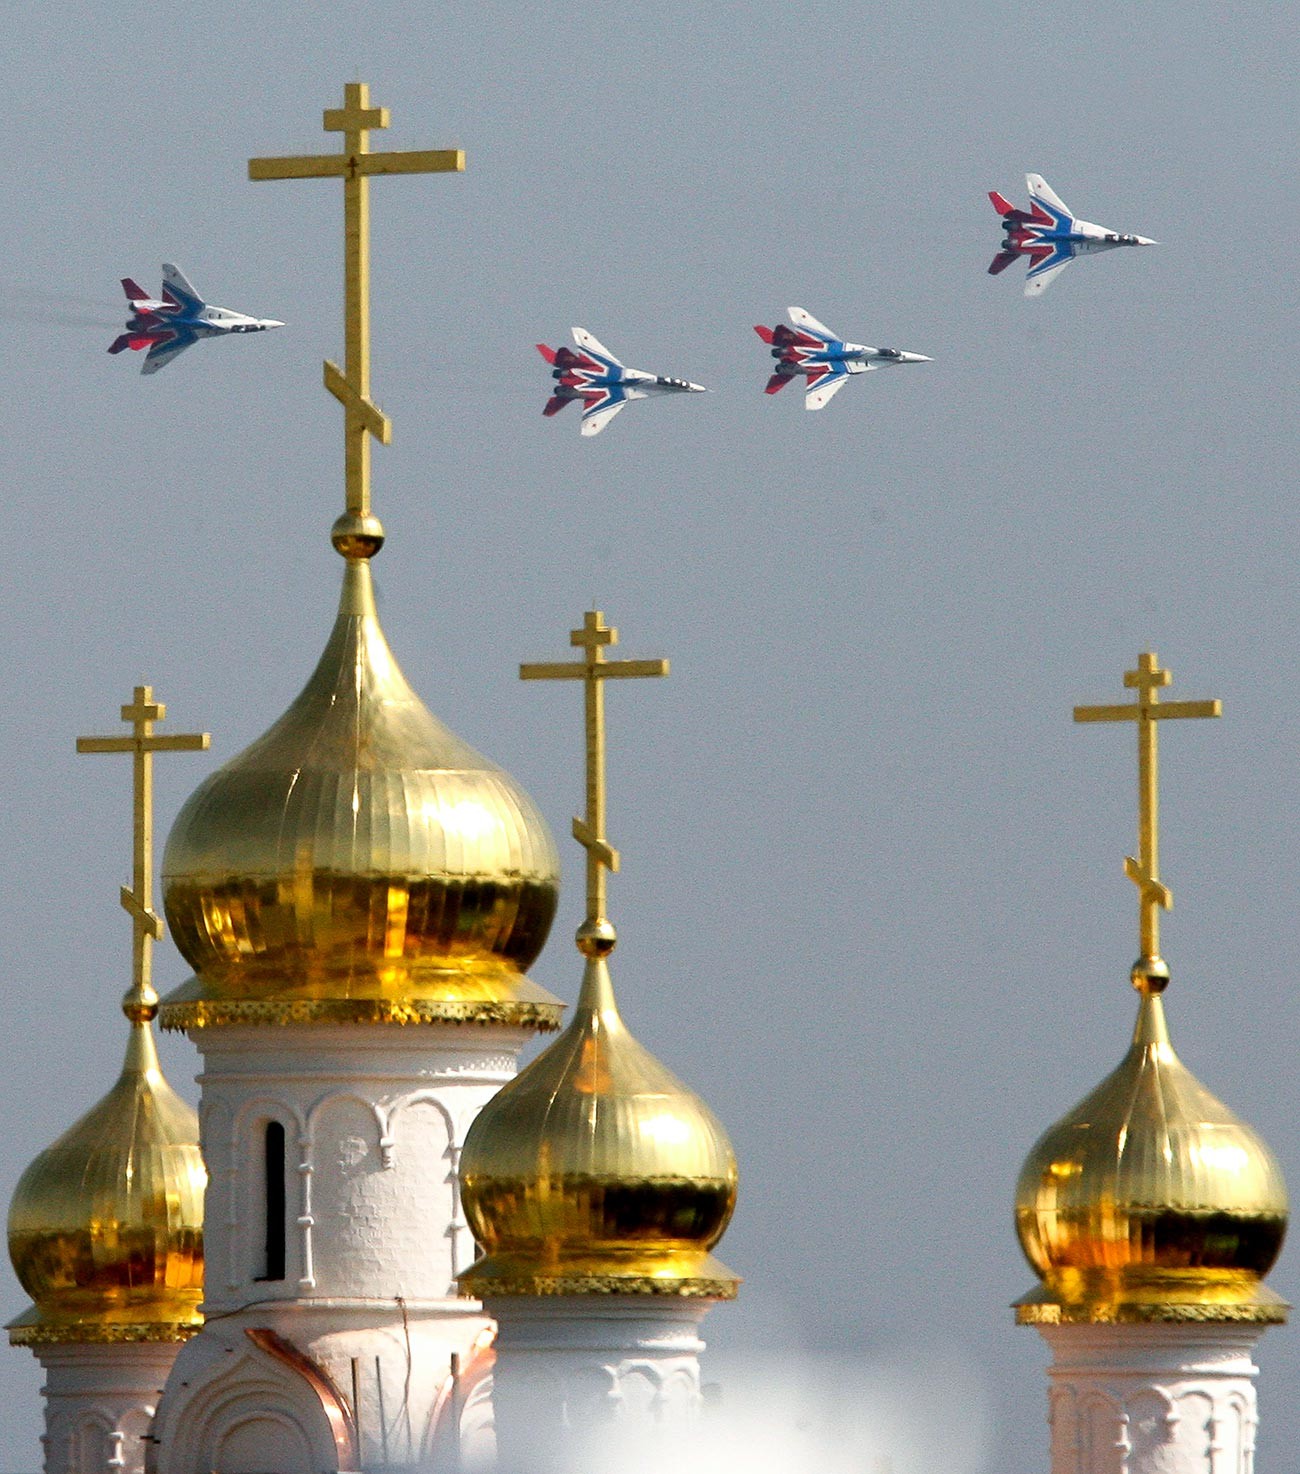 Jet tempur MiG-29 regu aerobatik Strizhi terbang dalam formasi di atas gereja Ortodoks selama pertunjukan udara internasional MAKS 2007 di Zhukovsky.